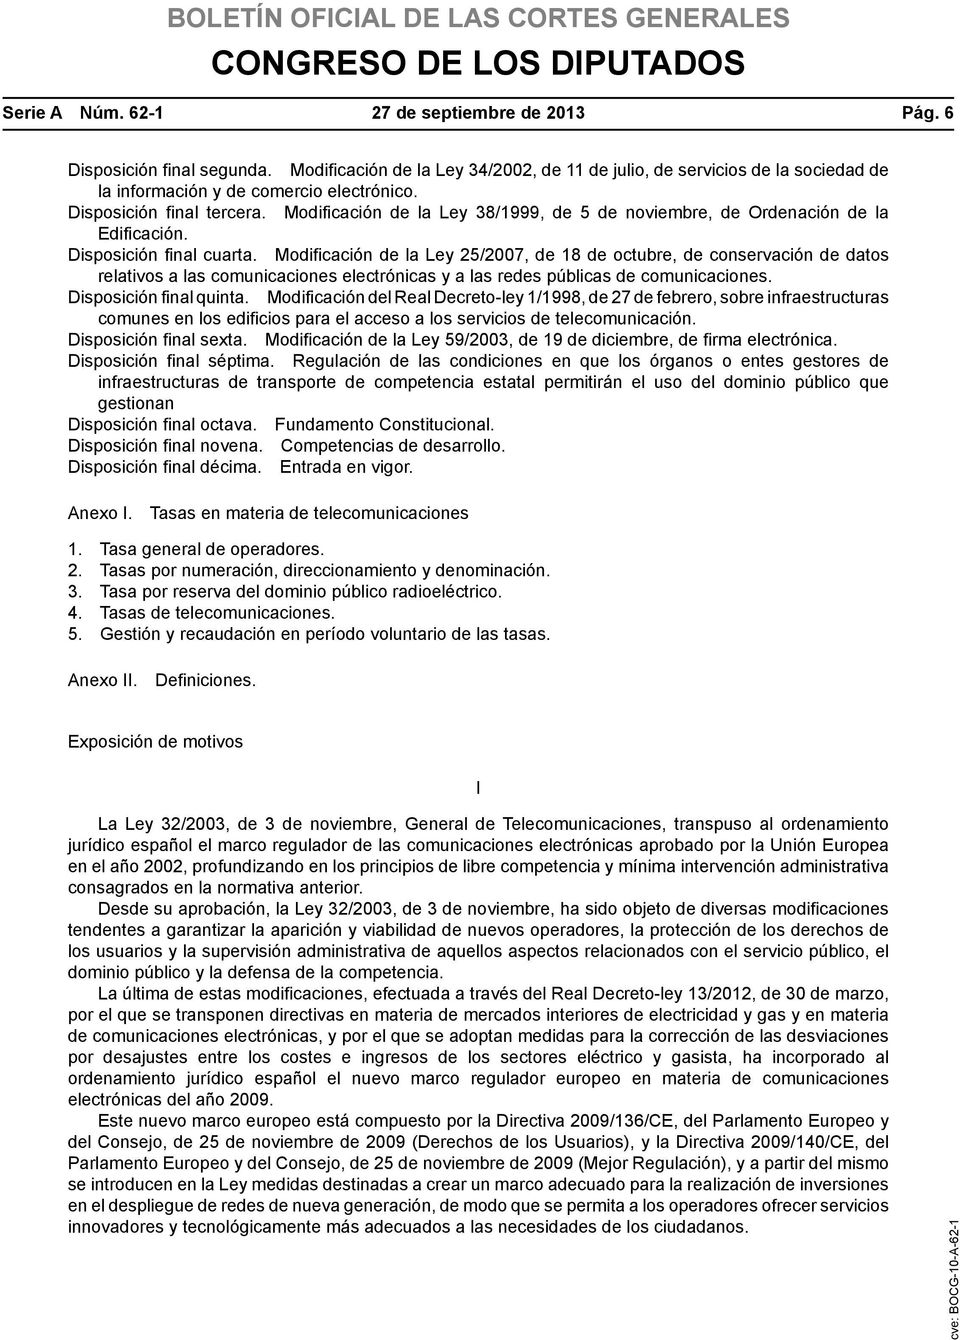 Modificación de la Ley 25/2007, de 18 de octubre, de conservación de datos relativos a las comunicaciones electrónicas y a las redes públicas de comunicaciones. Disposición final quinta.